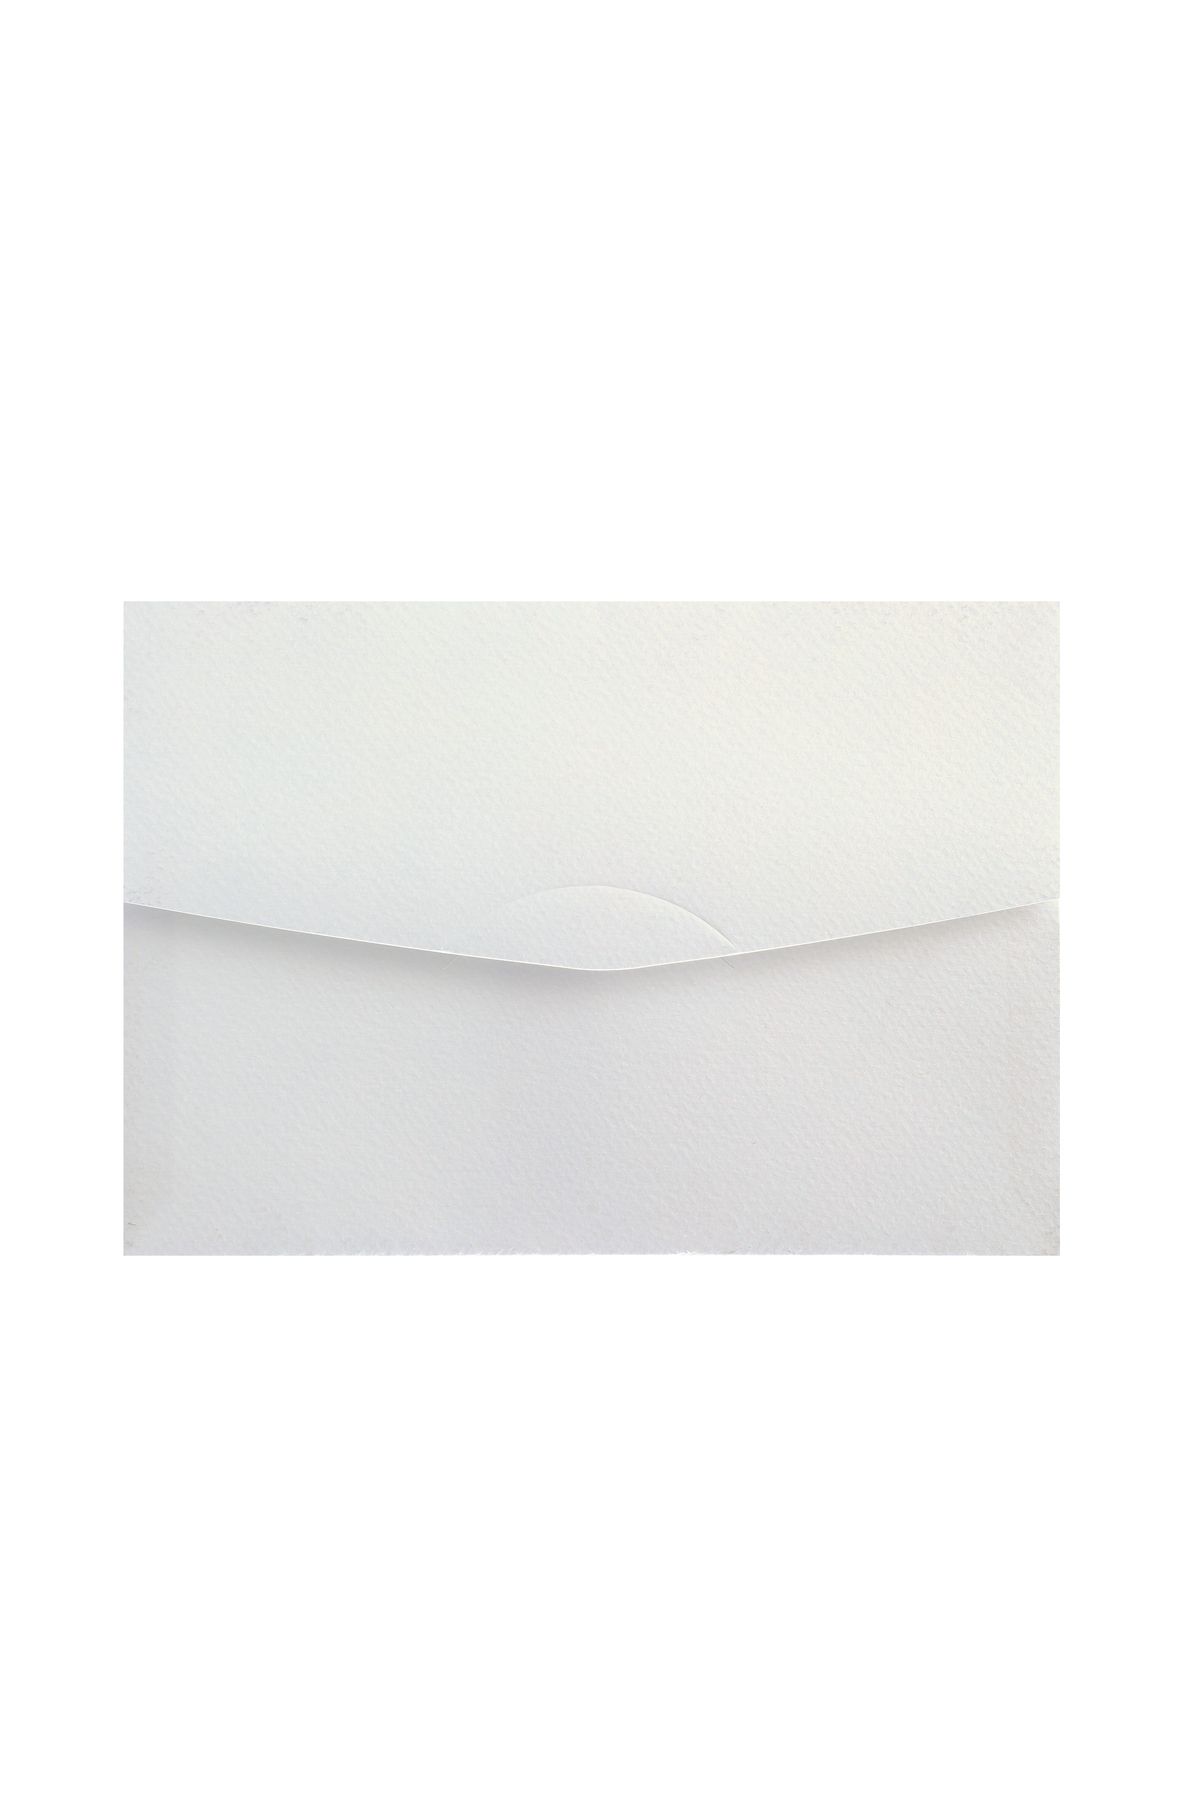 Vox Art Beyaz Ithal Dokulu Davetiye Zarfı 14x20cm, 220gr Kalın, 50 Adet